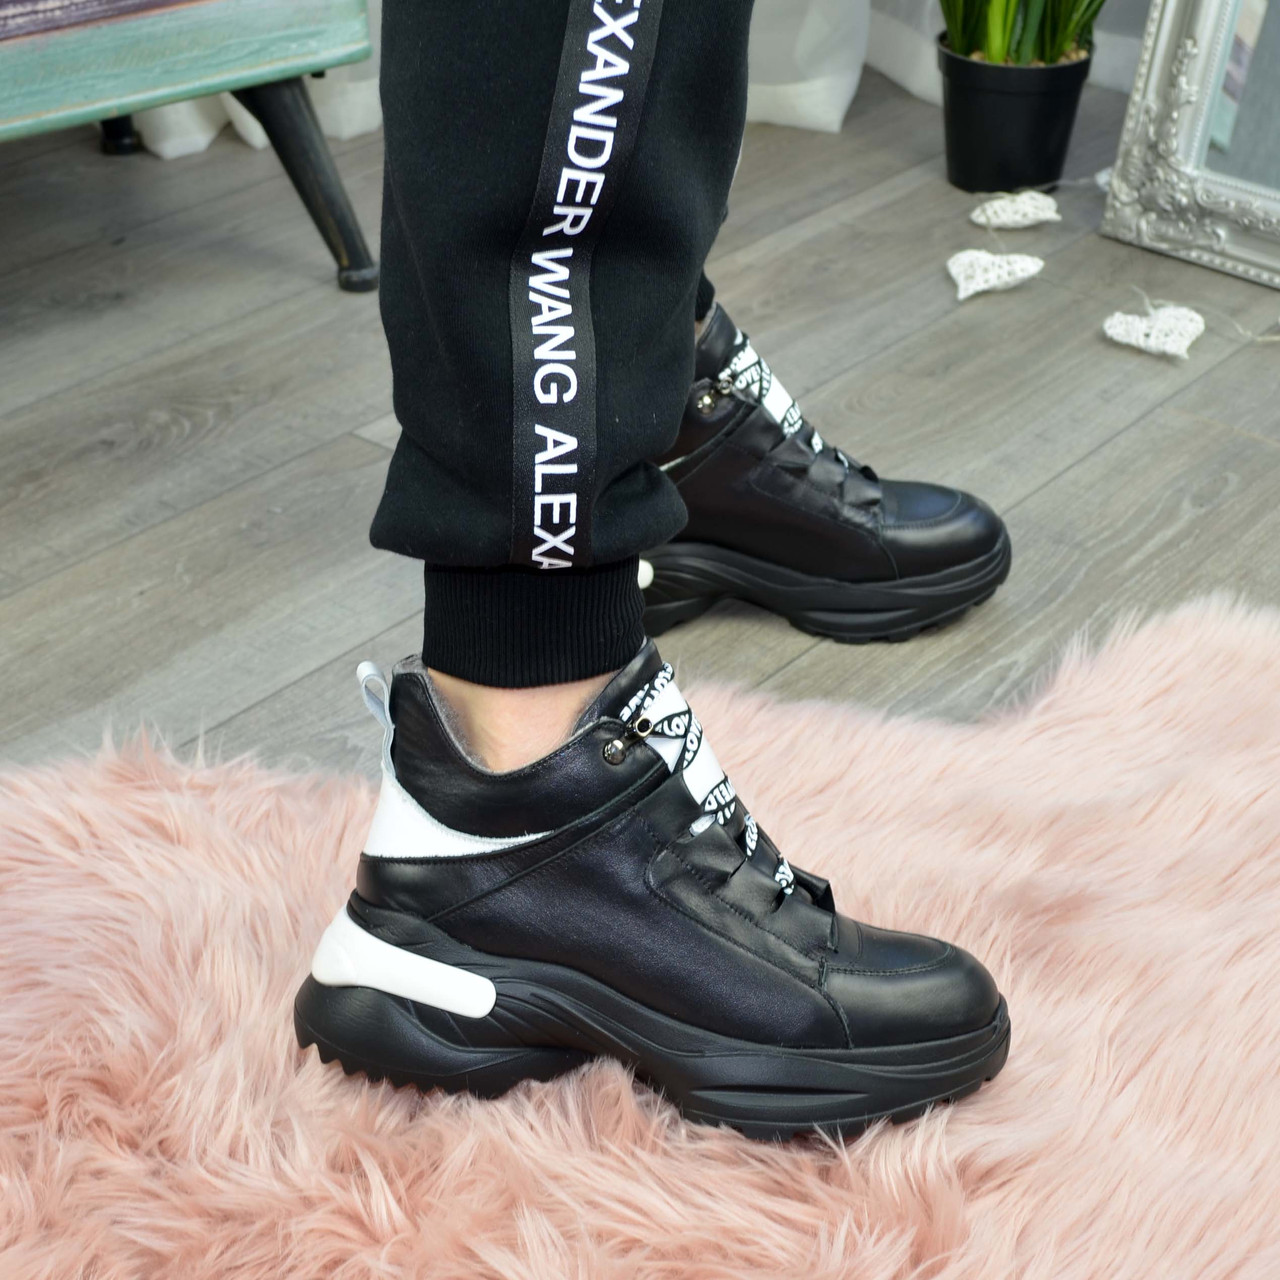 Ботинки женские кожаные спортивного стиля, цвет черный/белый, фото 5